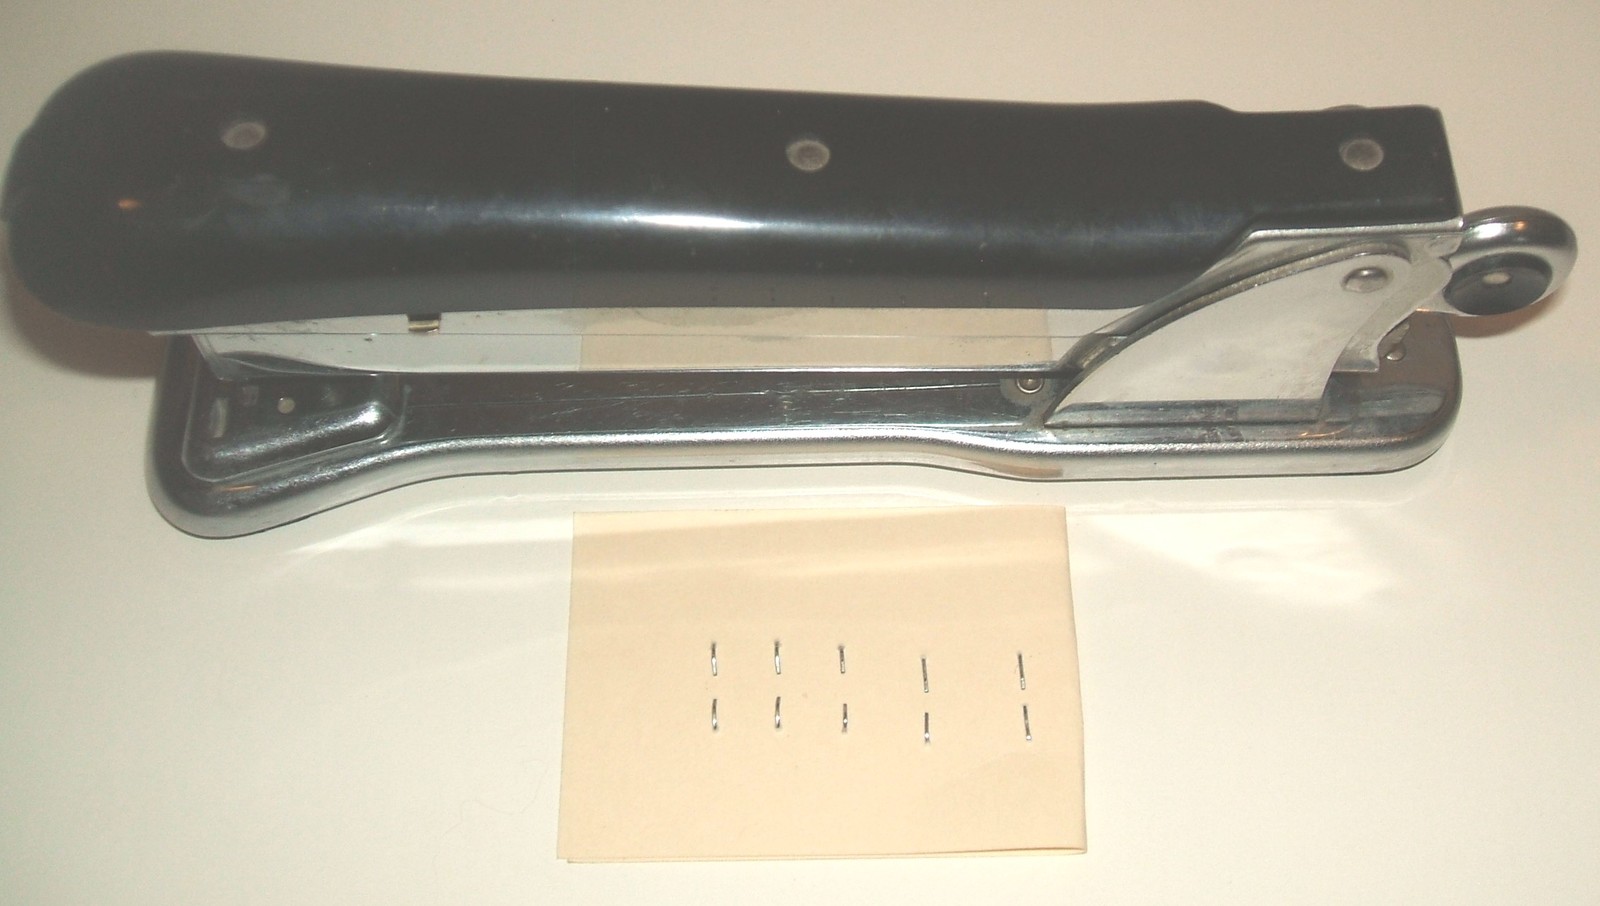 Vintage 1960s Aceliner Model 502 chrome/black functioning stapler & staples - $25.00